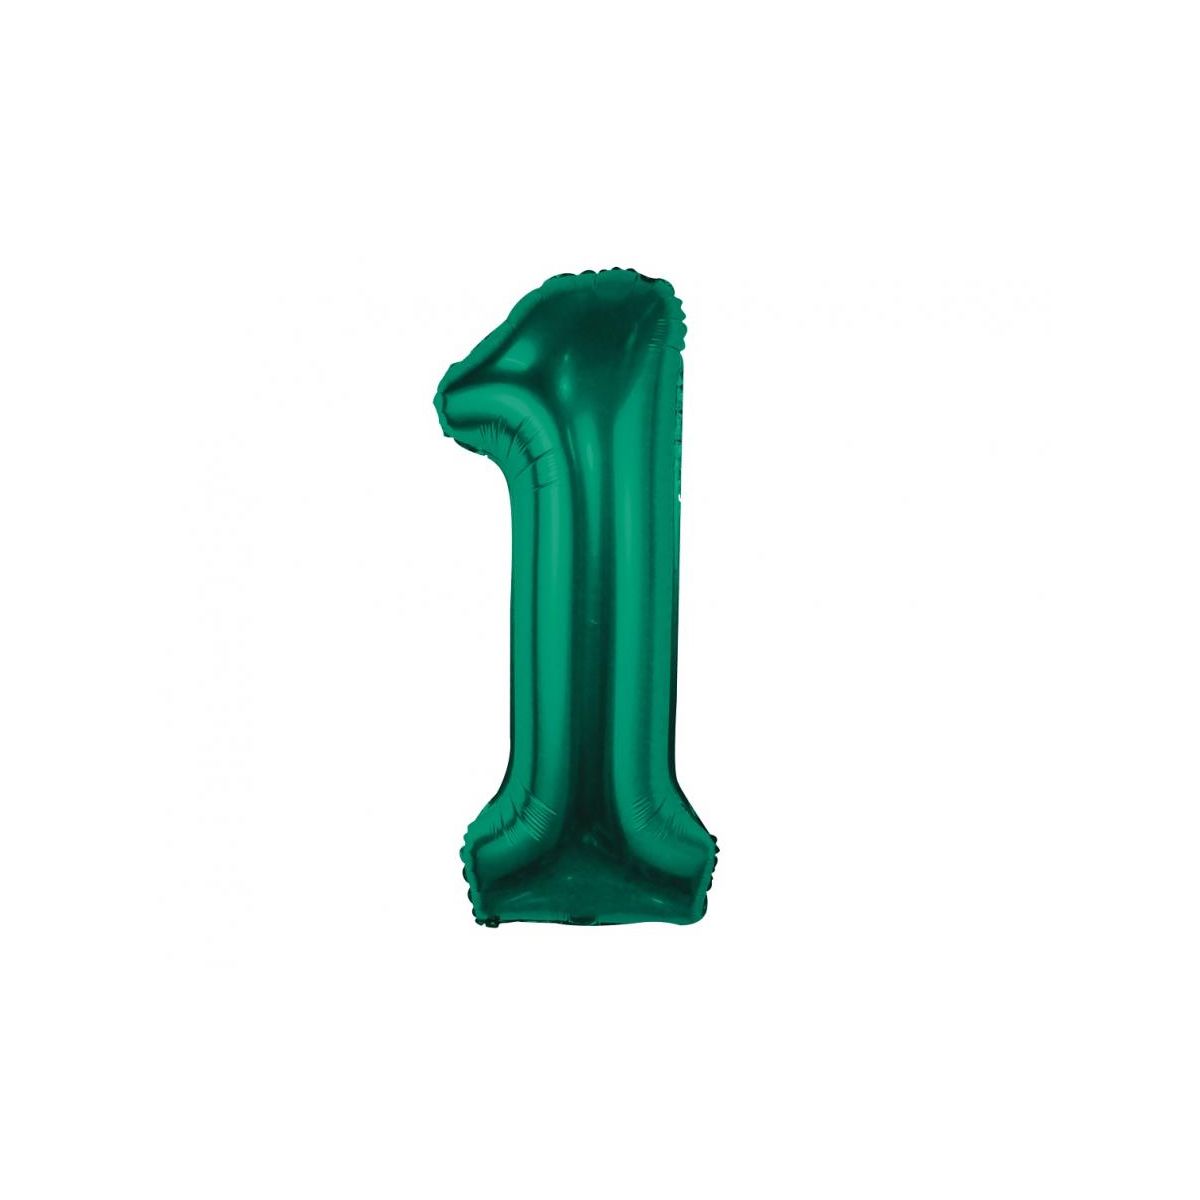 Balon foliowy Godan cyfra 1, zieleń butelkowa, 85 cm (CH-B8B1)